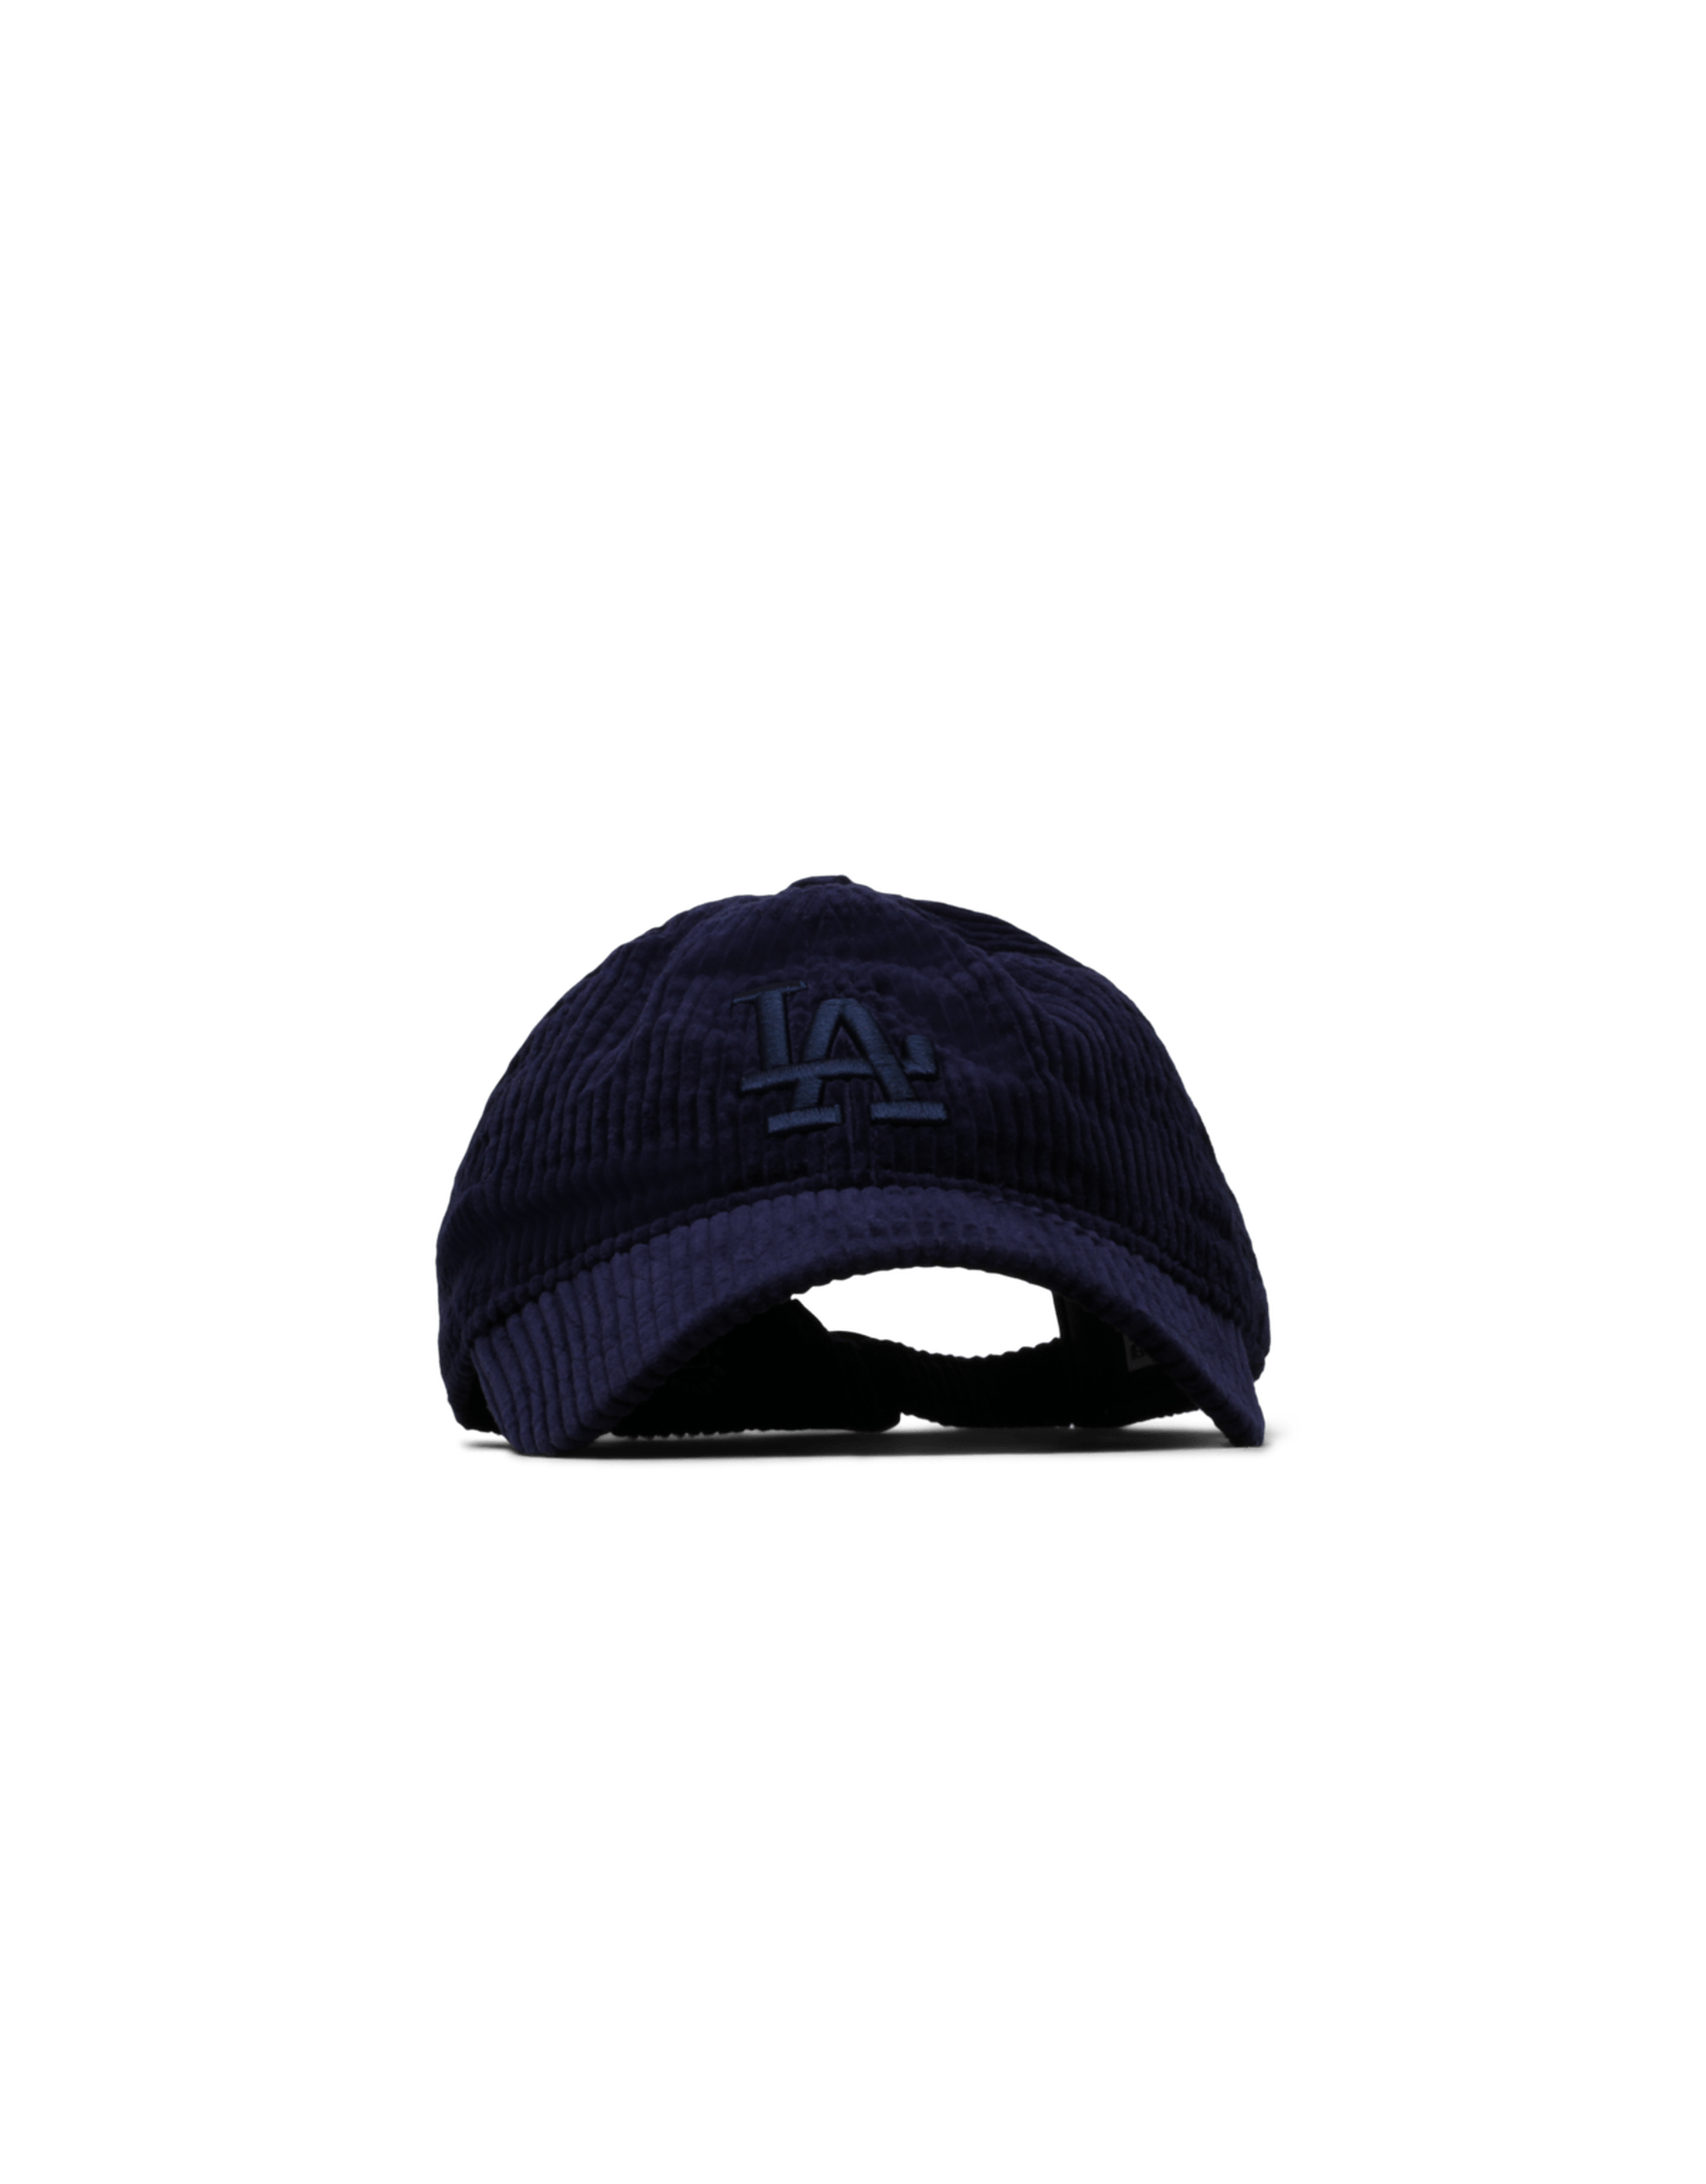 LA Dodgers 9TWENTY Adjustable Corduroy Cap